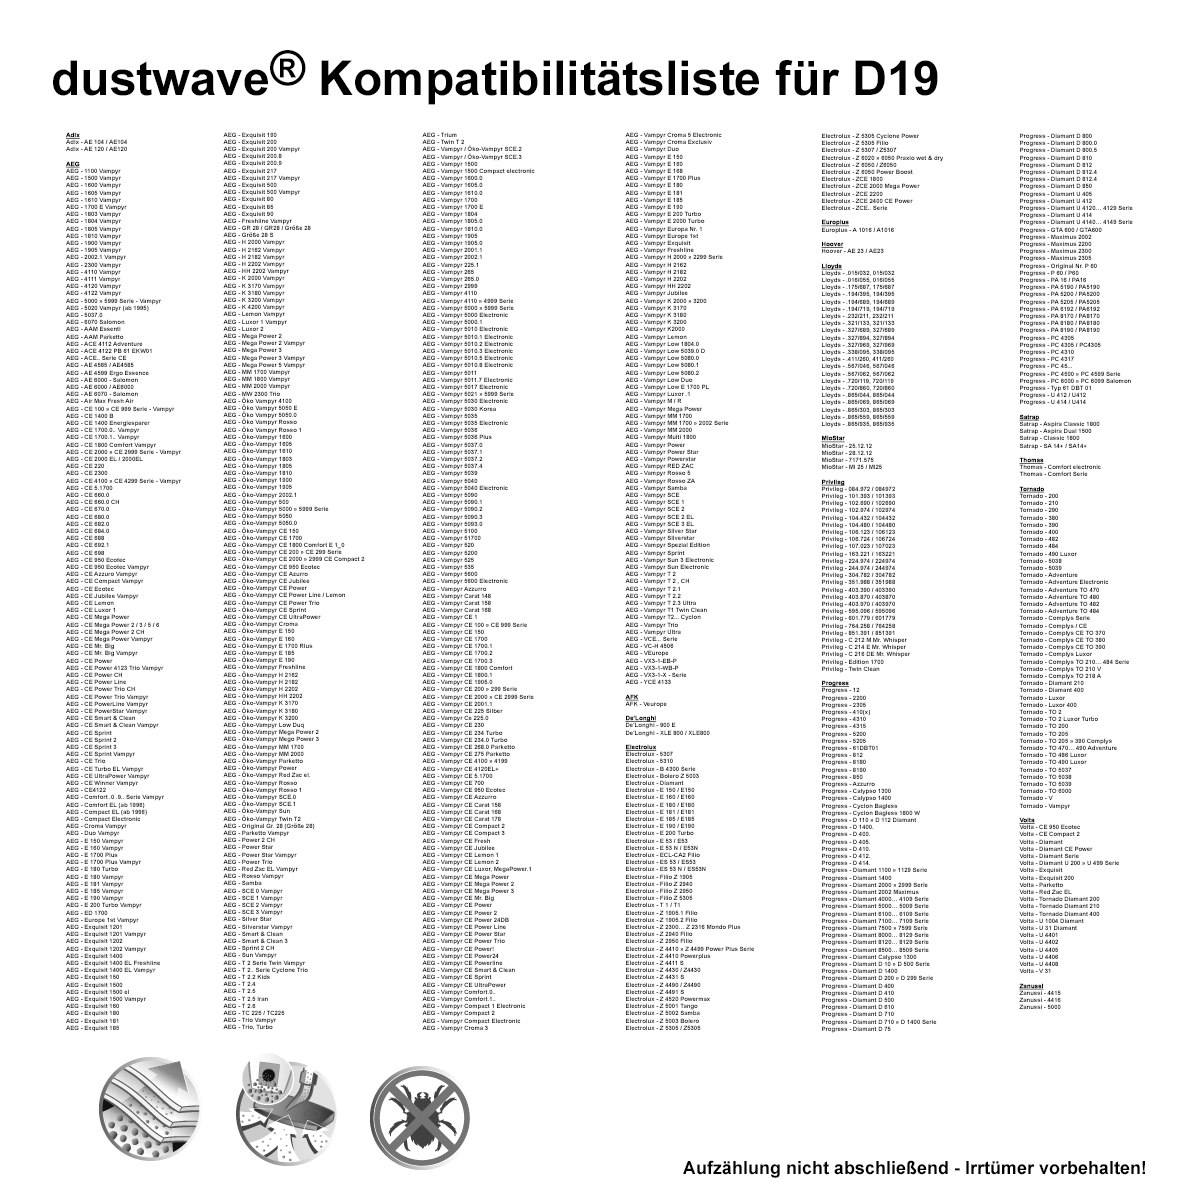 Dustwave® 20 Staubsaugerbeutel für AEG Vampyr 5001 - hocheffizient mit Hygieneverschluss - Made in Germany